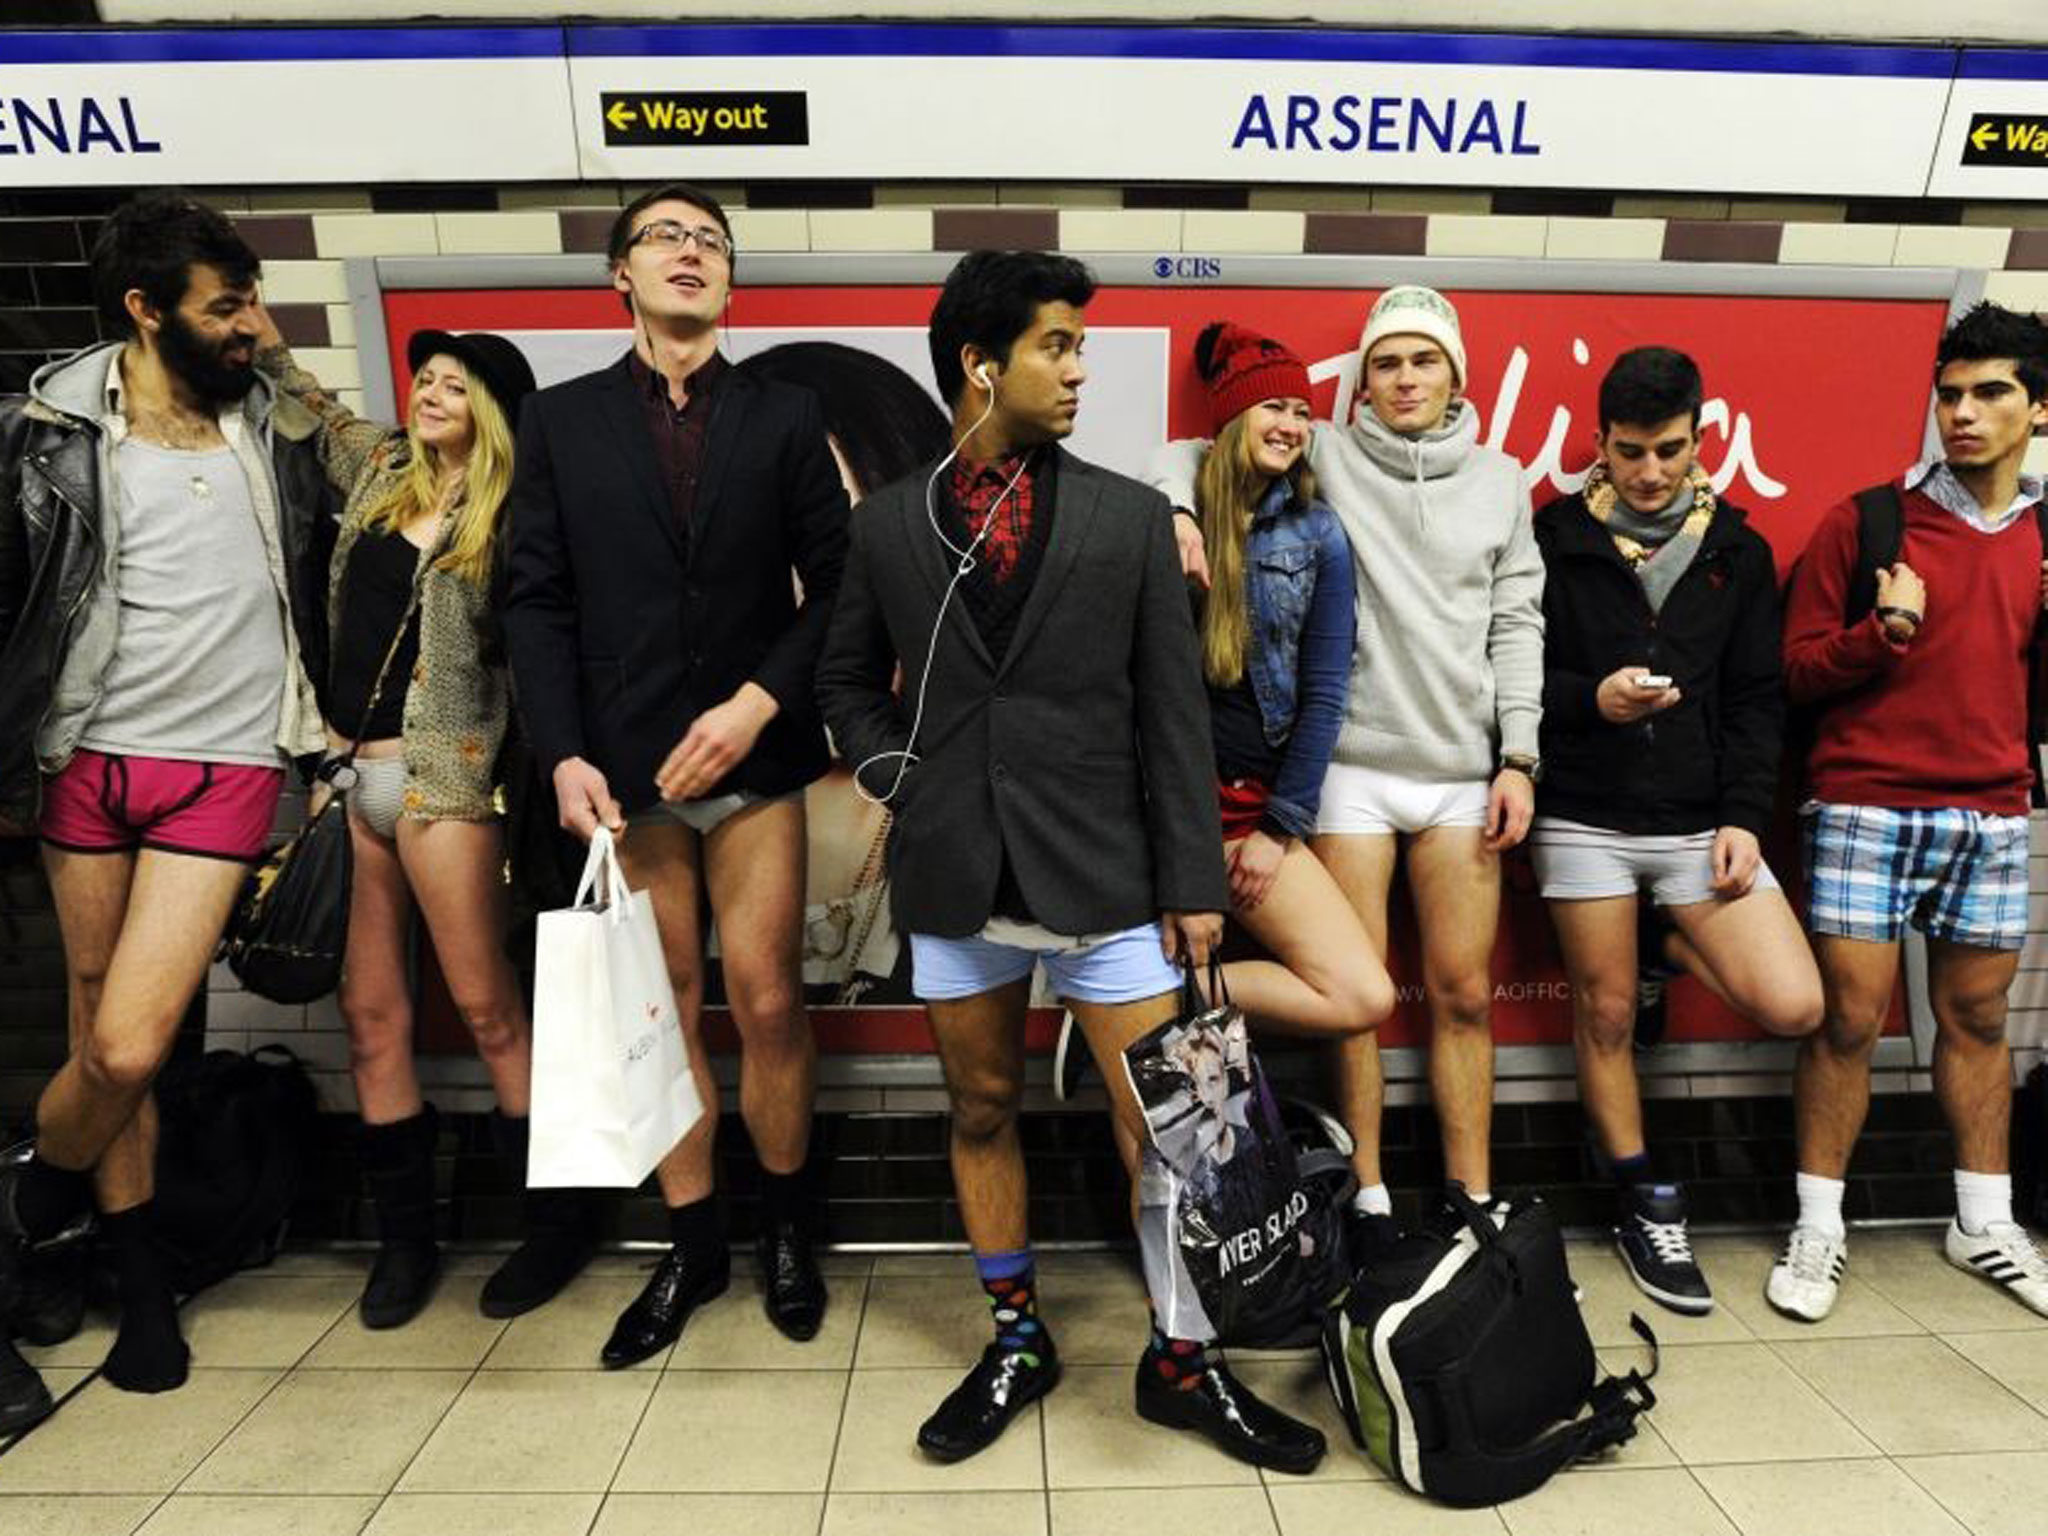 no pants subway ride in New York City subway - no pants dream - Enal Way out Arsenal Ewa 16800